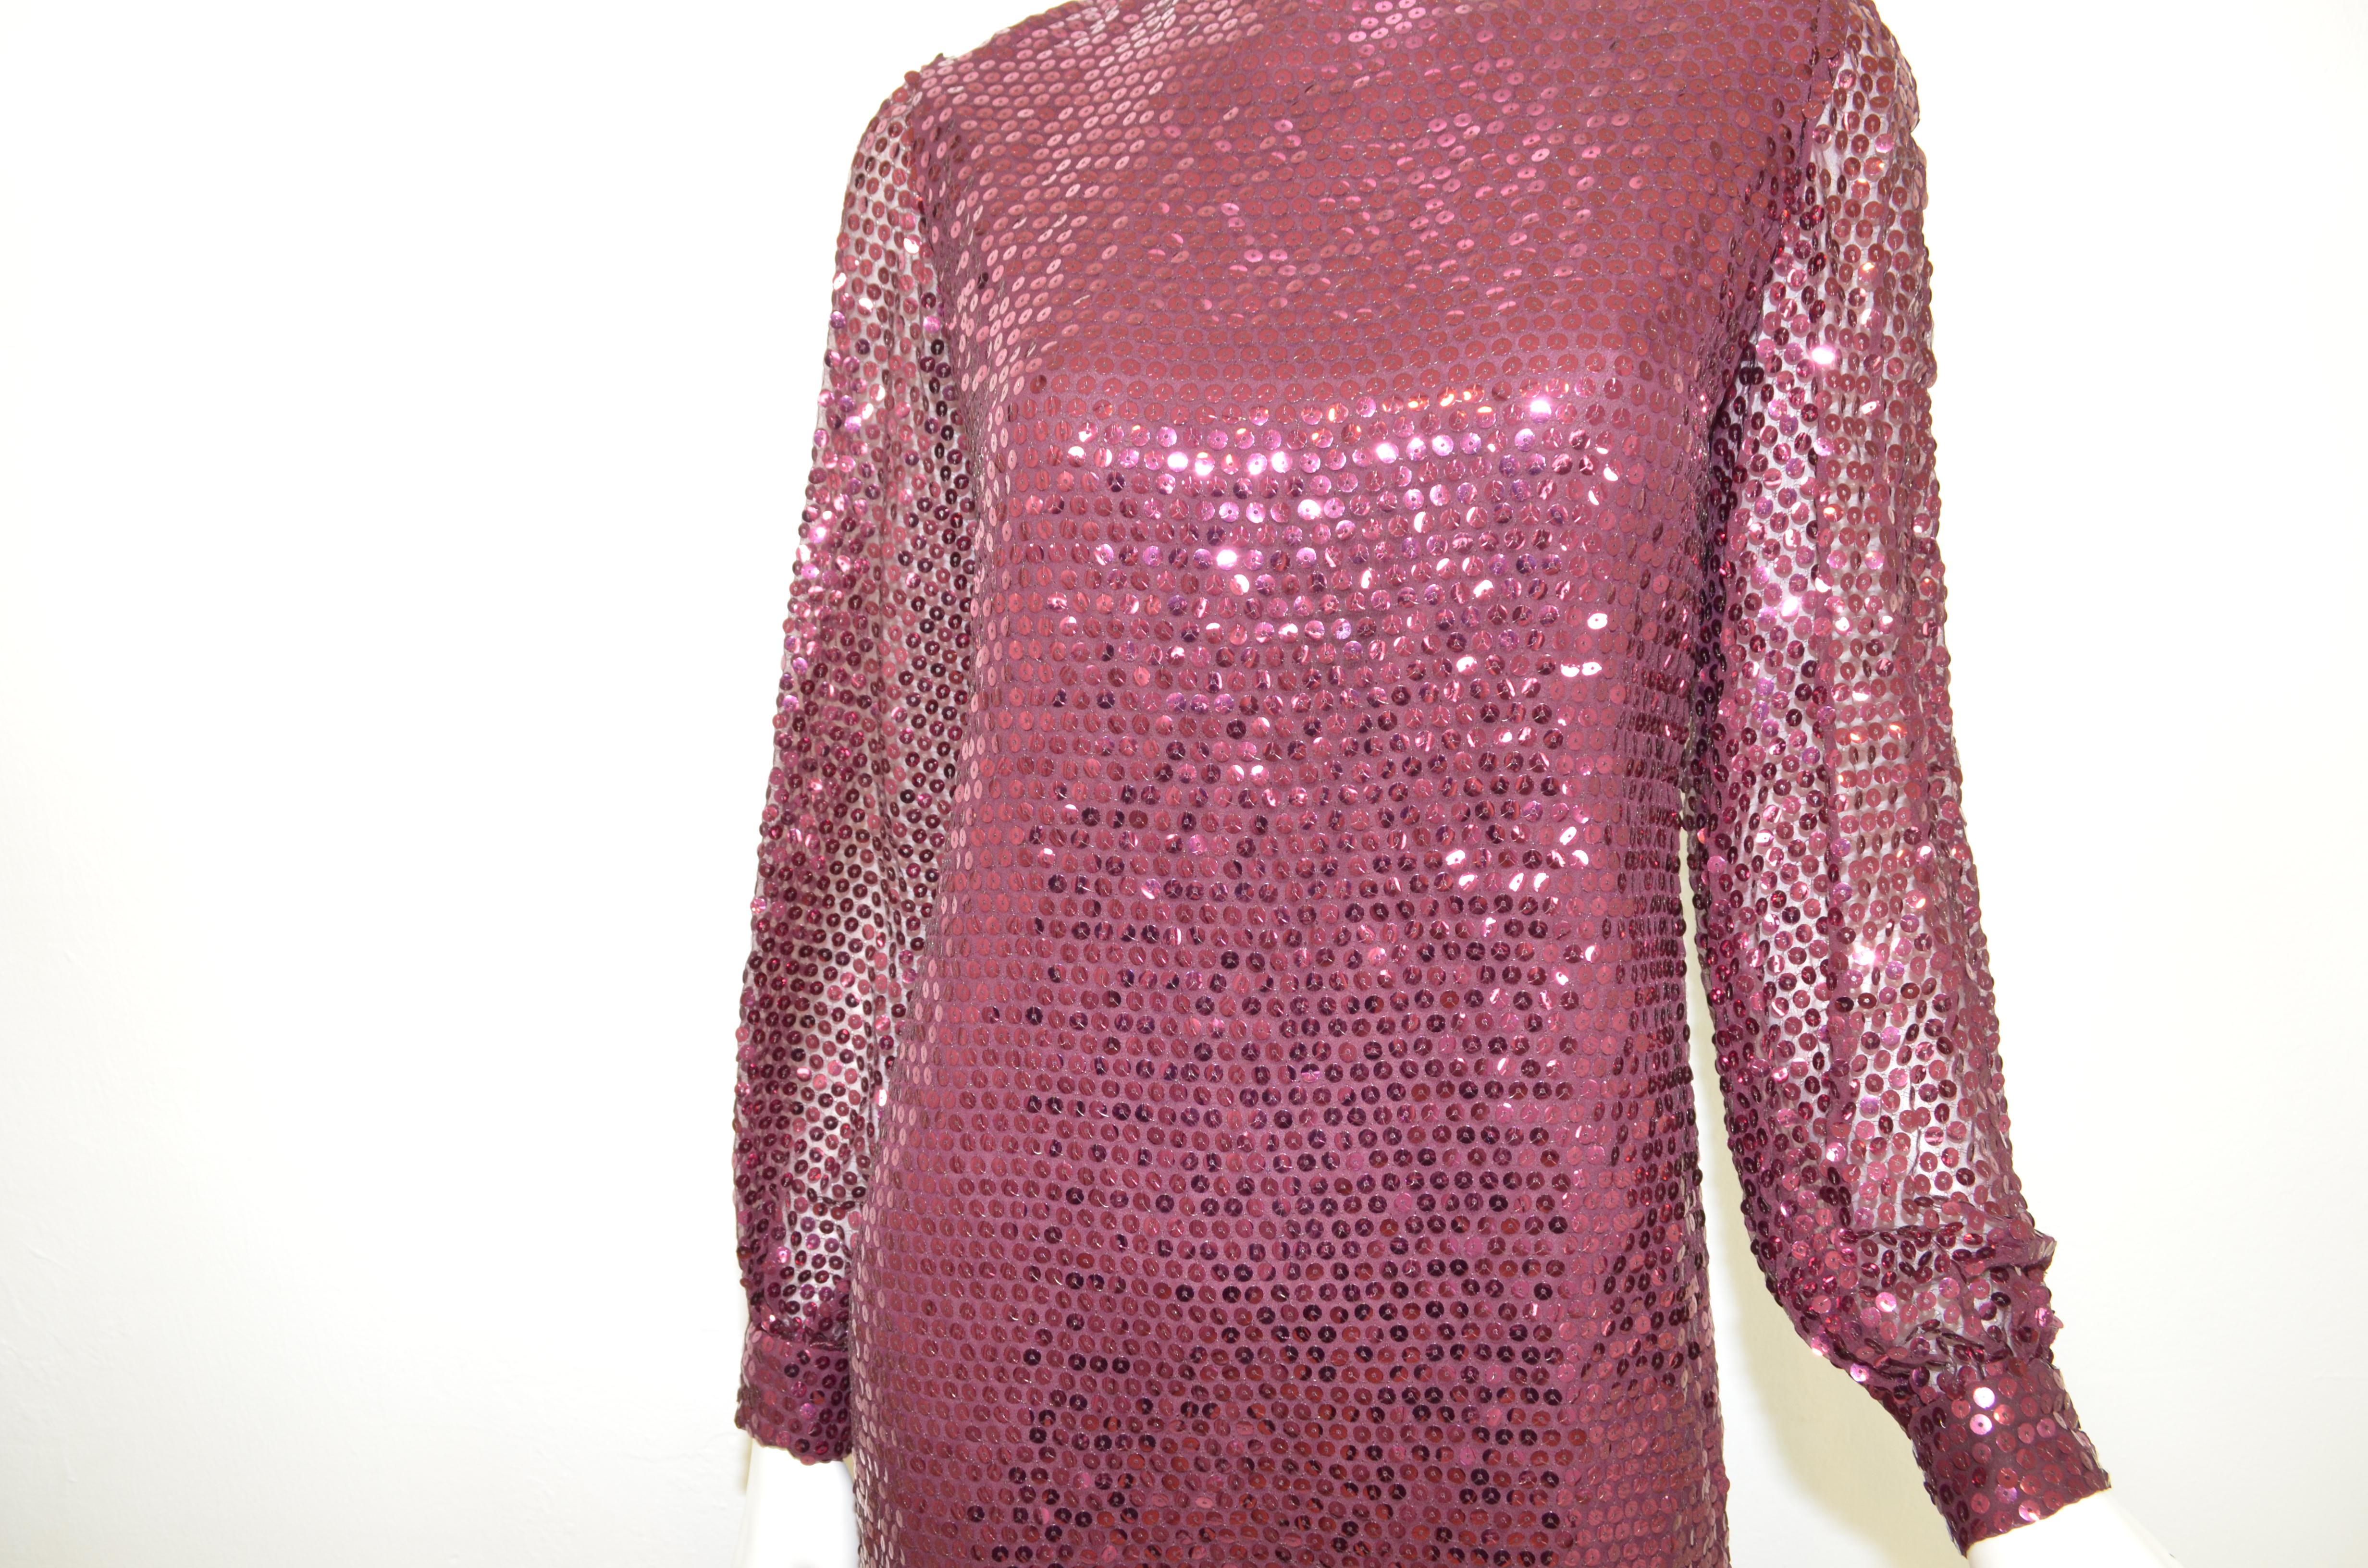 Oscar de la Renta 1970's Sequin Embellished Dress -- In einem kastanienbraunen Farbton mit Pailletten verziert. Das Kleid hat einen Reißverschluss am Rücken und ist komplett gefüttert. Das Kleid ist in einem sehr guten Vintage-Zustand und hat keine